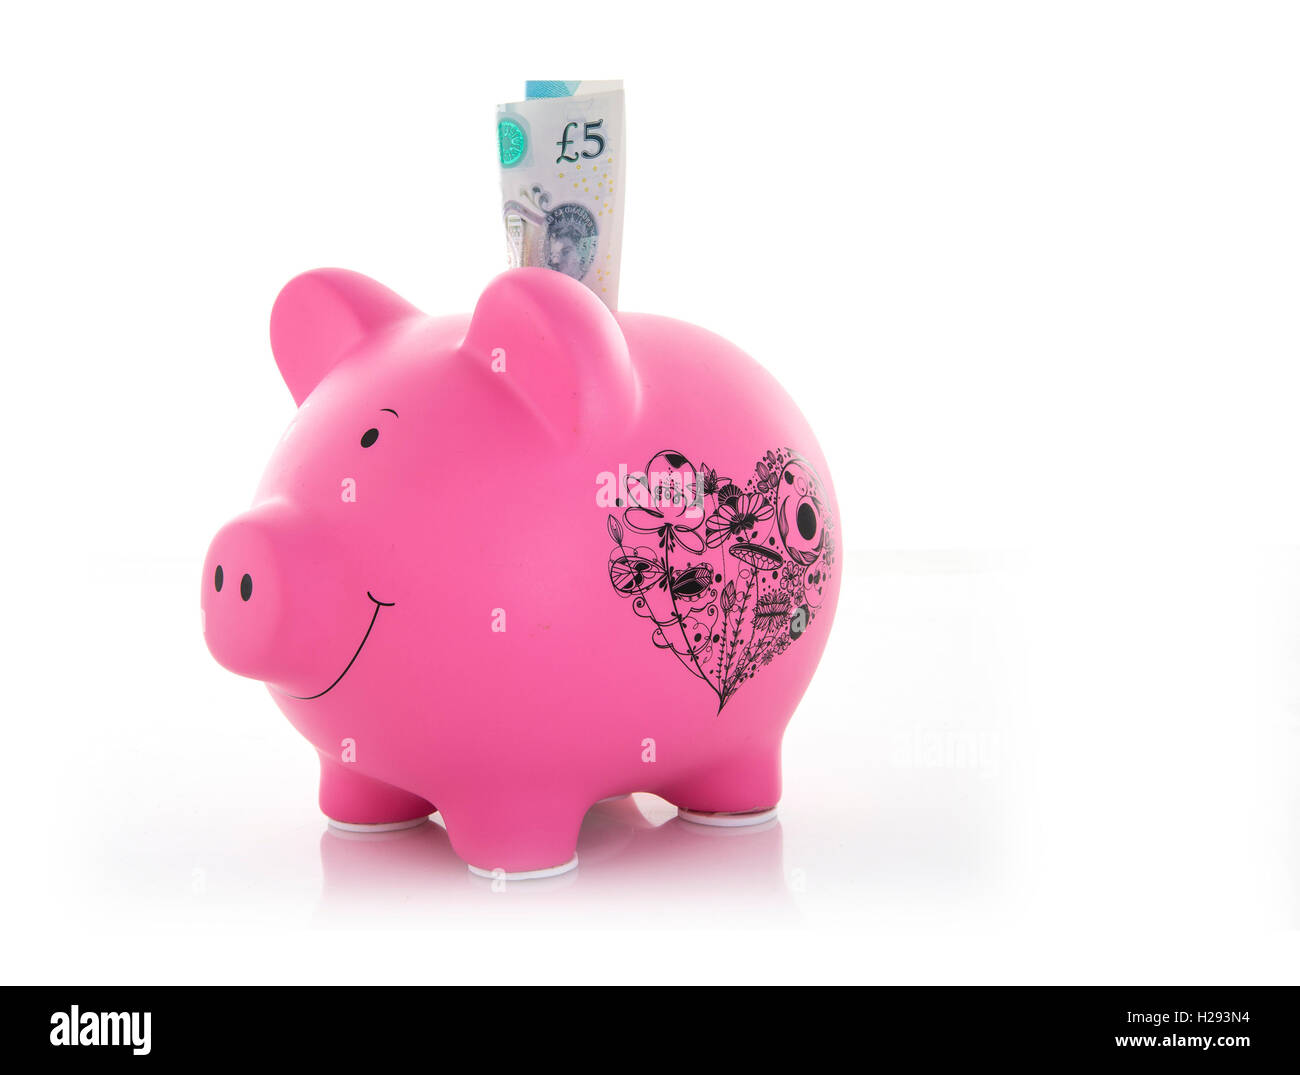 Rosa Sparschwein mit neuen fünf-Pfund-Note auf einem weißen Hintergrund Stockfoto